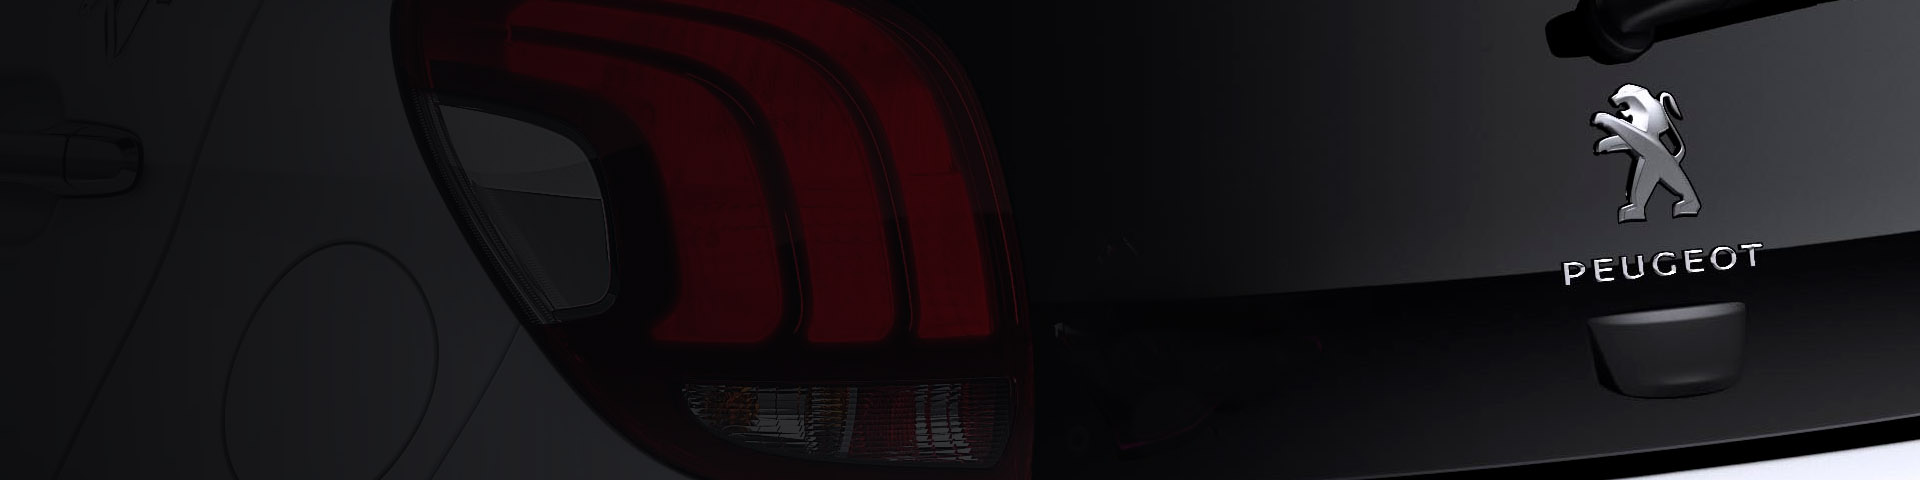 Peugeot 208 Hatchback Backdrop